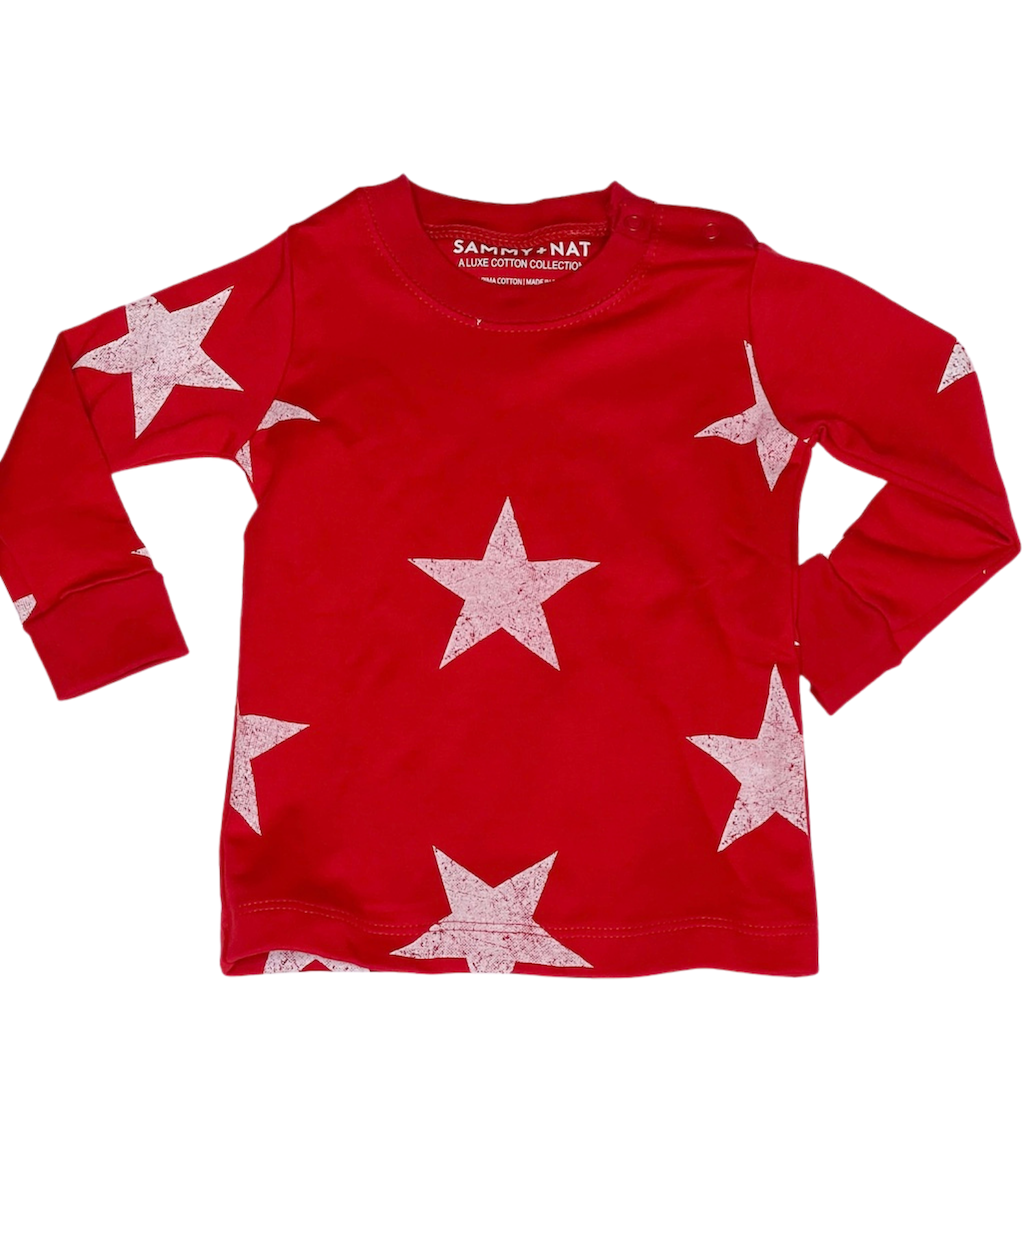 Red Star Print Pajamas